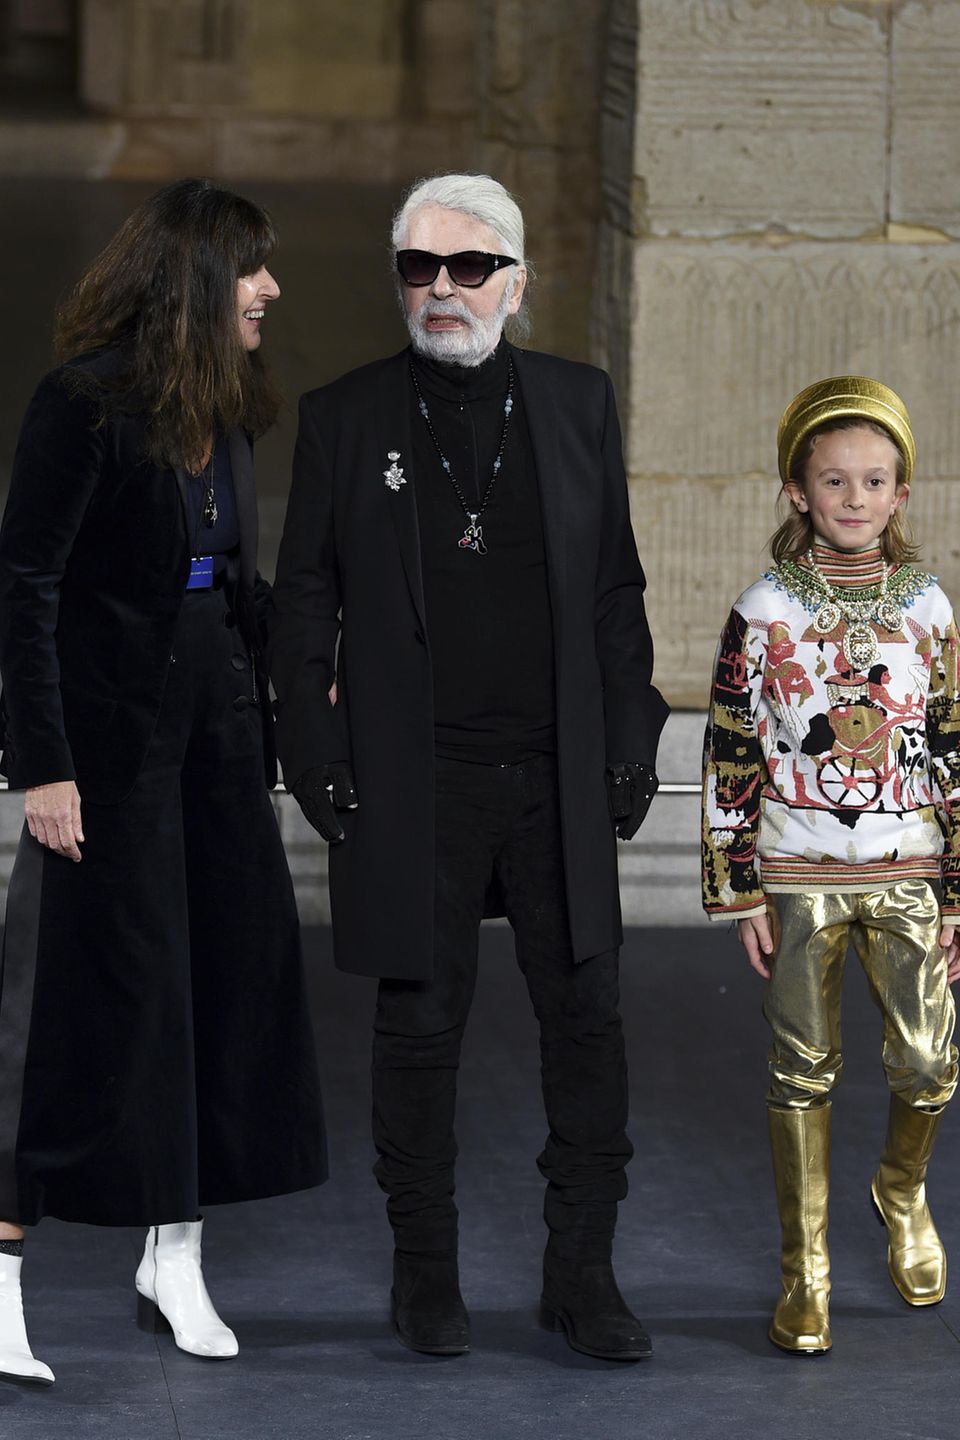 Karl Lagerfeld (M.) mit seiner "Chanel"-Nachfolgerin Virginie Viard (l.) und Hudson Kroenig (r.) während der "Chanel Metiers D'Art 2018/19 Show" im "Metropolitan Museum of Art" in New York am 4. Dezember 2018. Es war der letzte öffentliche Auftritt von Patenonkel und Patensohn.